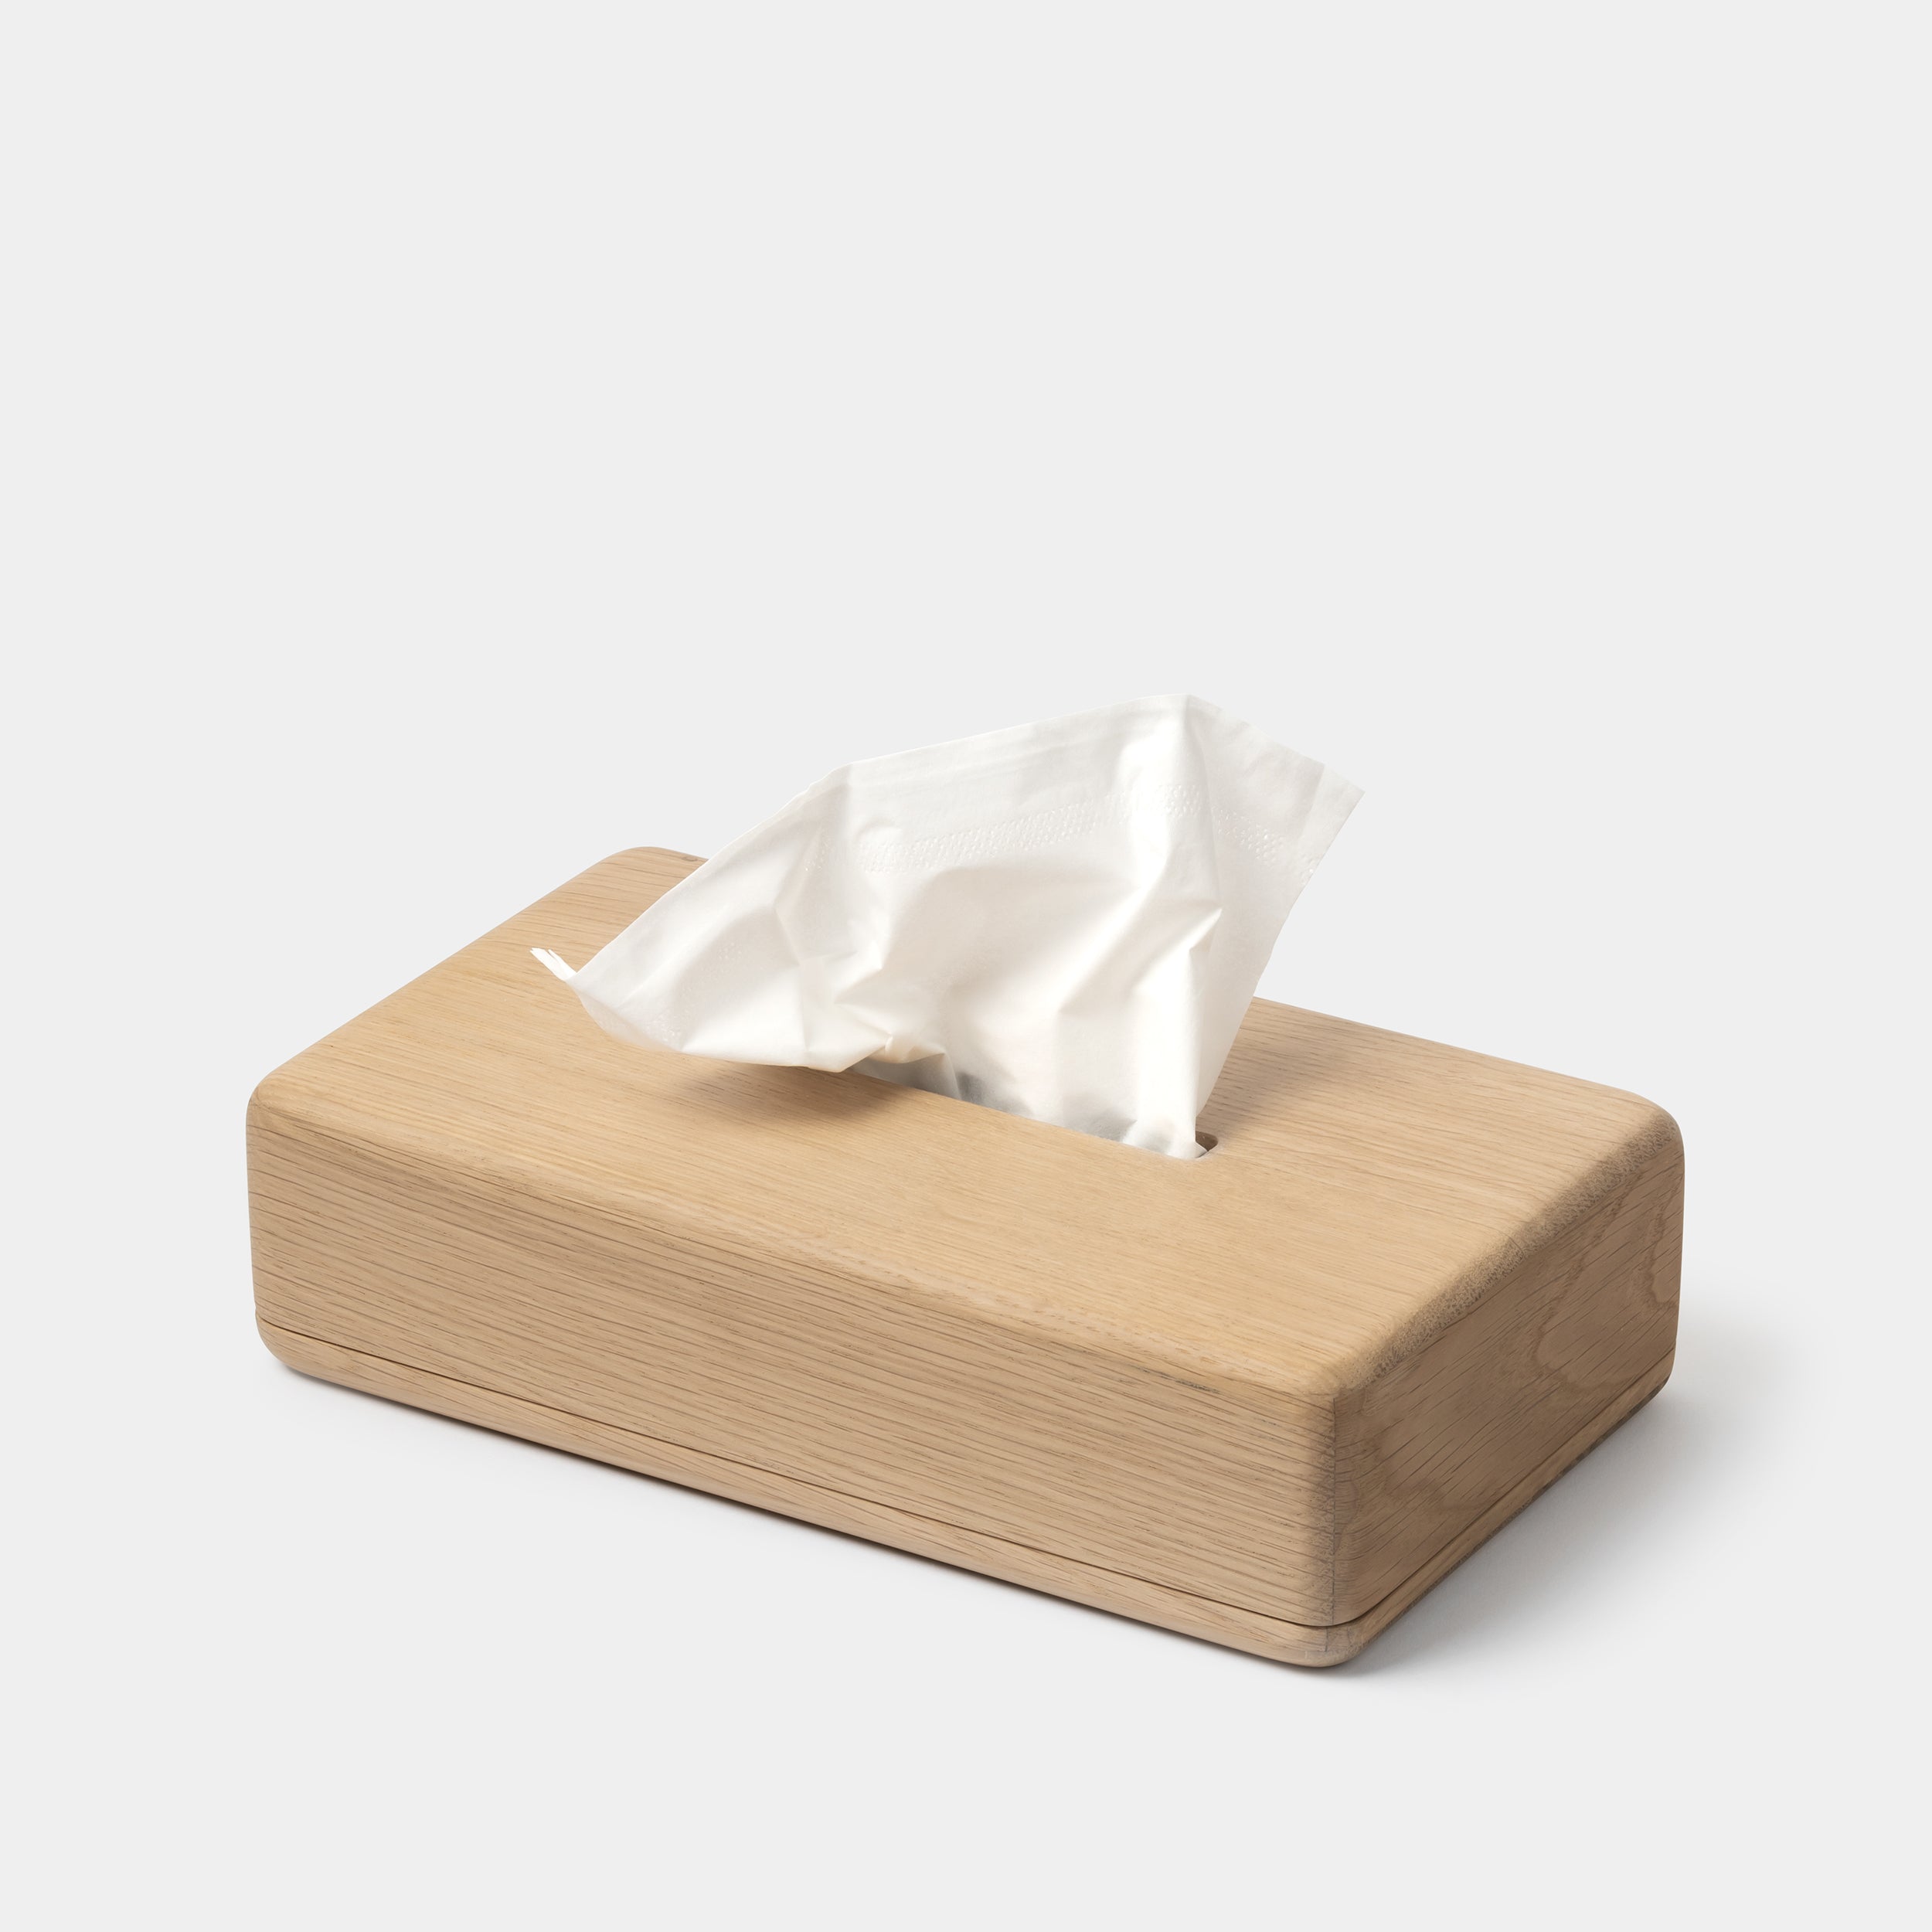 Vincent van Duysen Tissue Box